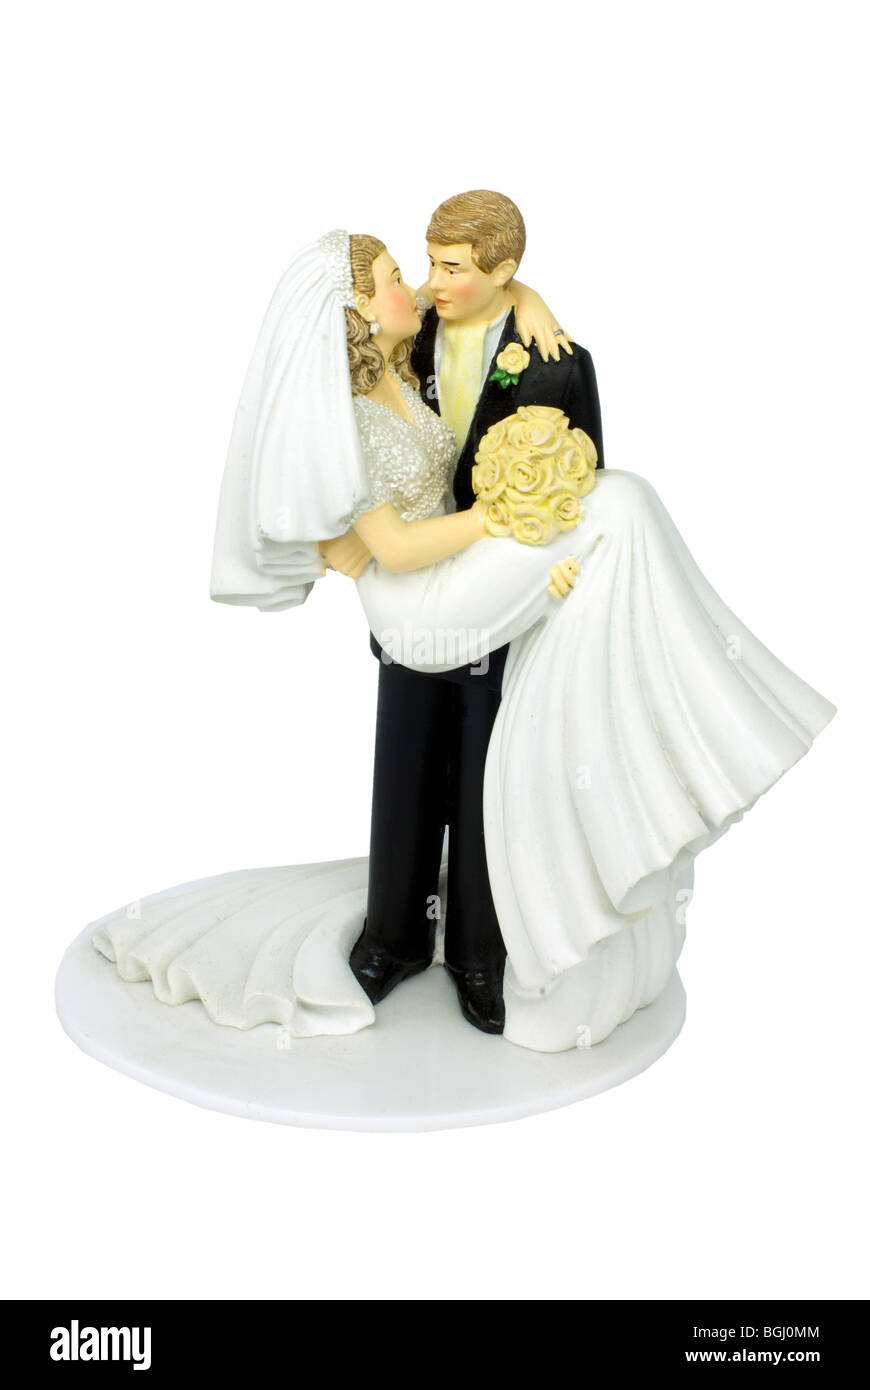 Wedding cake topper immagini e fotografie stock ad alta risoluzione - Alamy